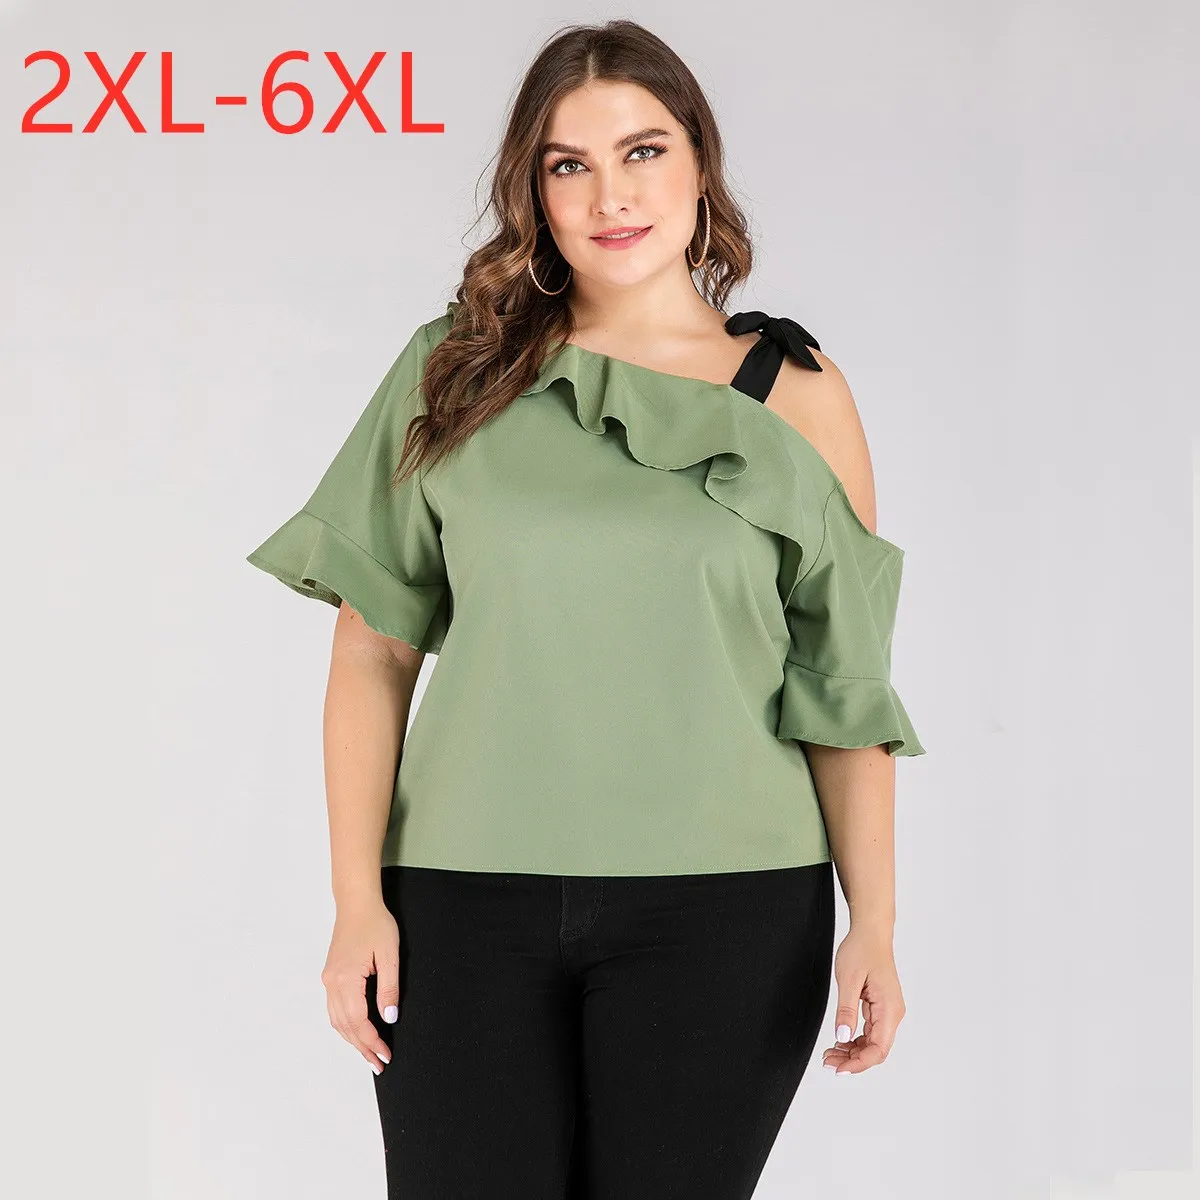 

Женская блузка без бретелек, с коротким рукавом, размеры до 6XL